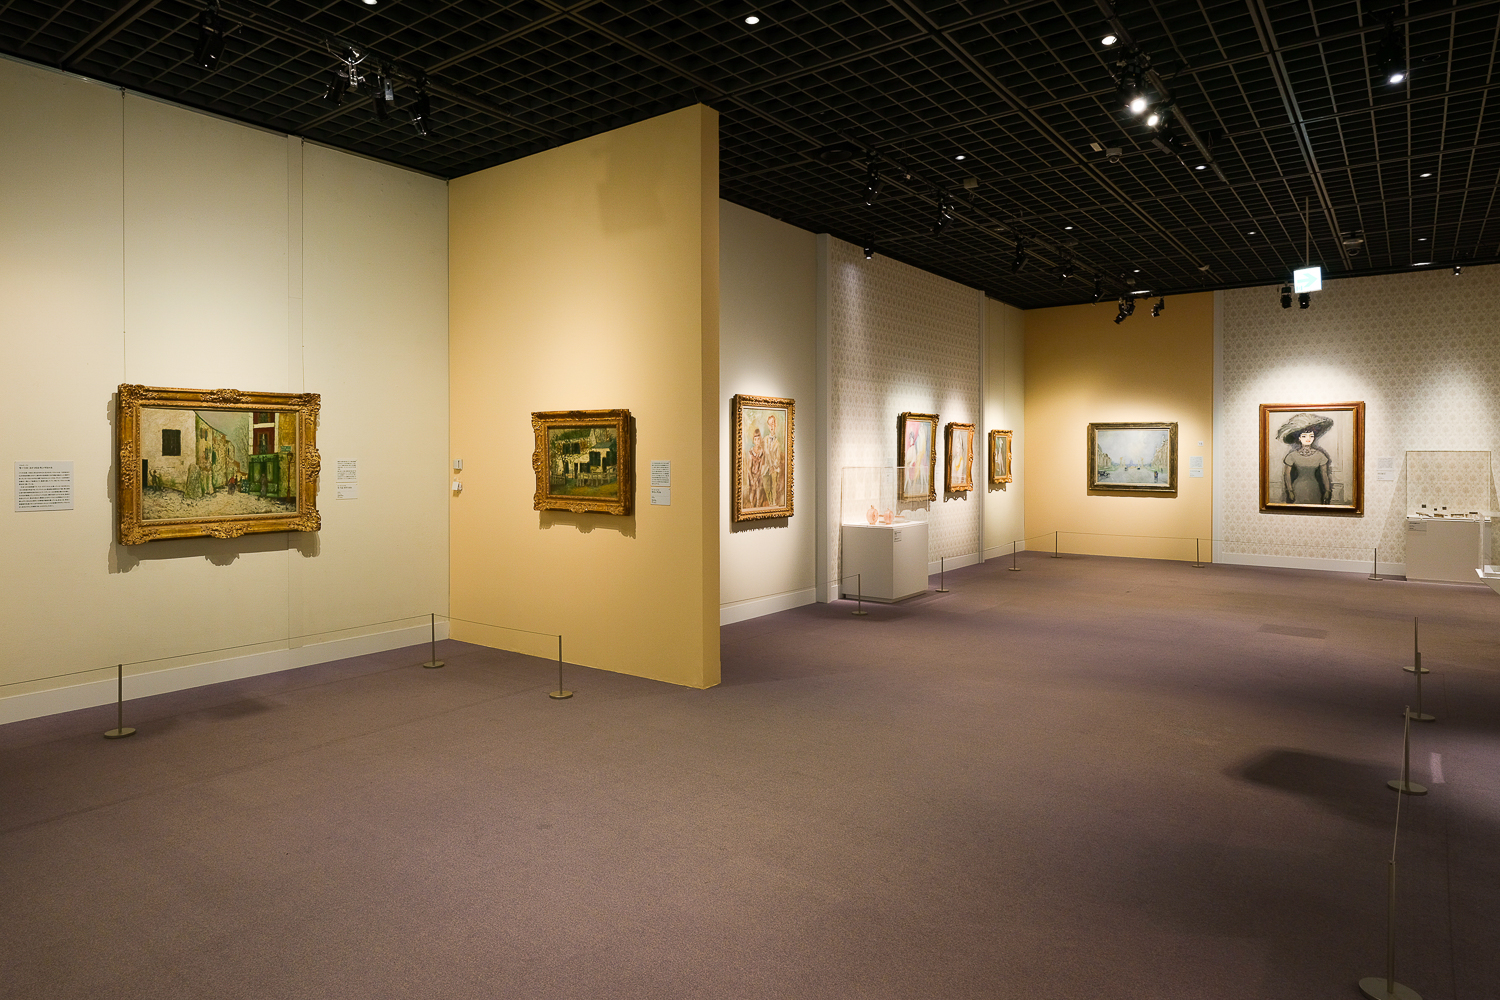 左の2つがモーリス・ユトリロの作品。奥には28名中唯一女性のマリー・ローランサンの作品も。
Photo:Yuya Furukawa